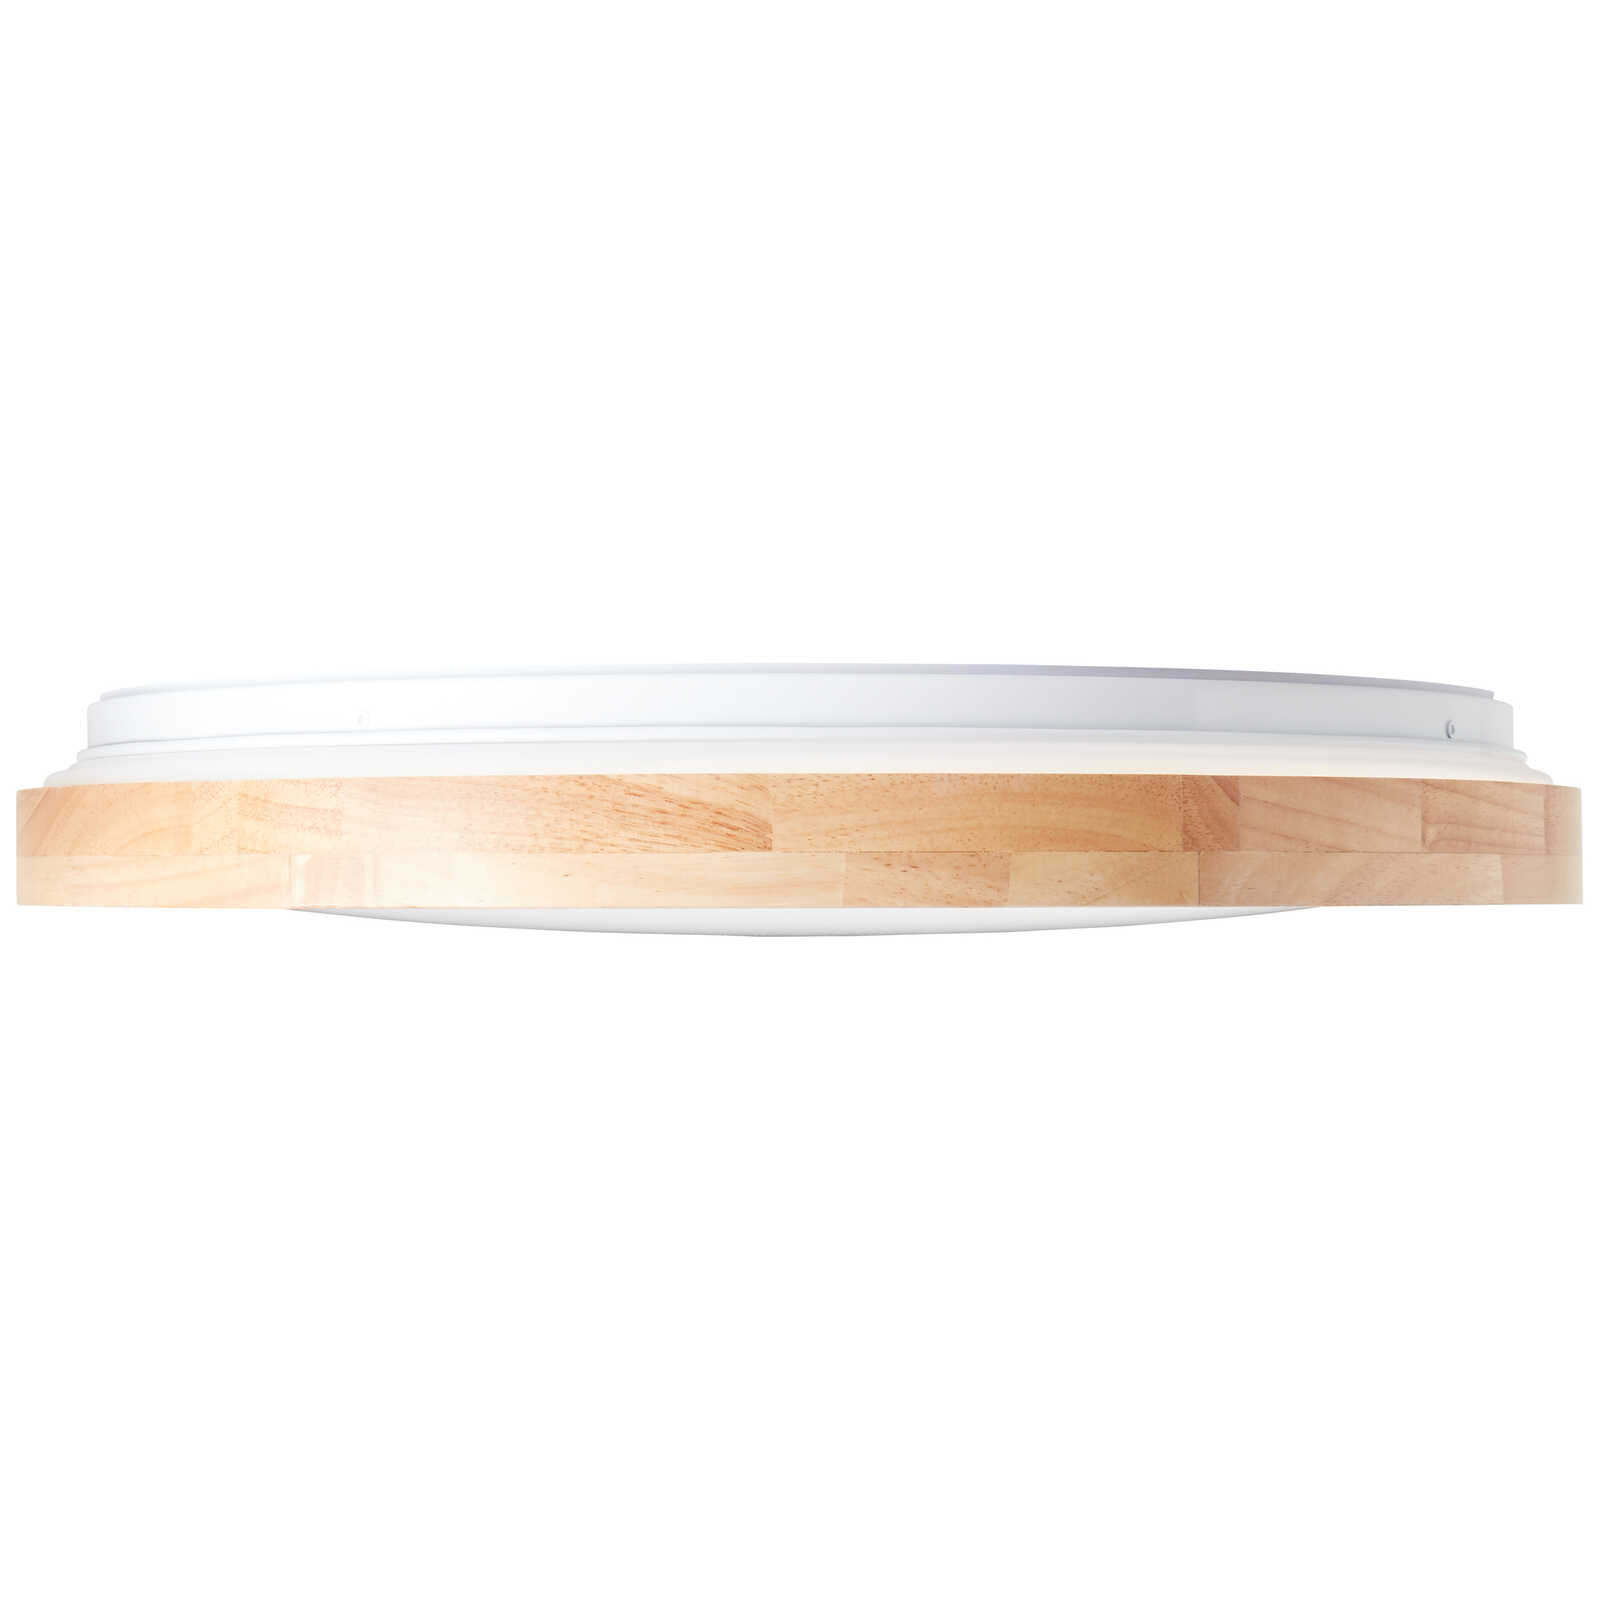             Wooden ceiling light - Alea 2 - Beige
        